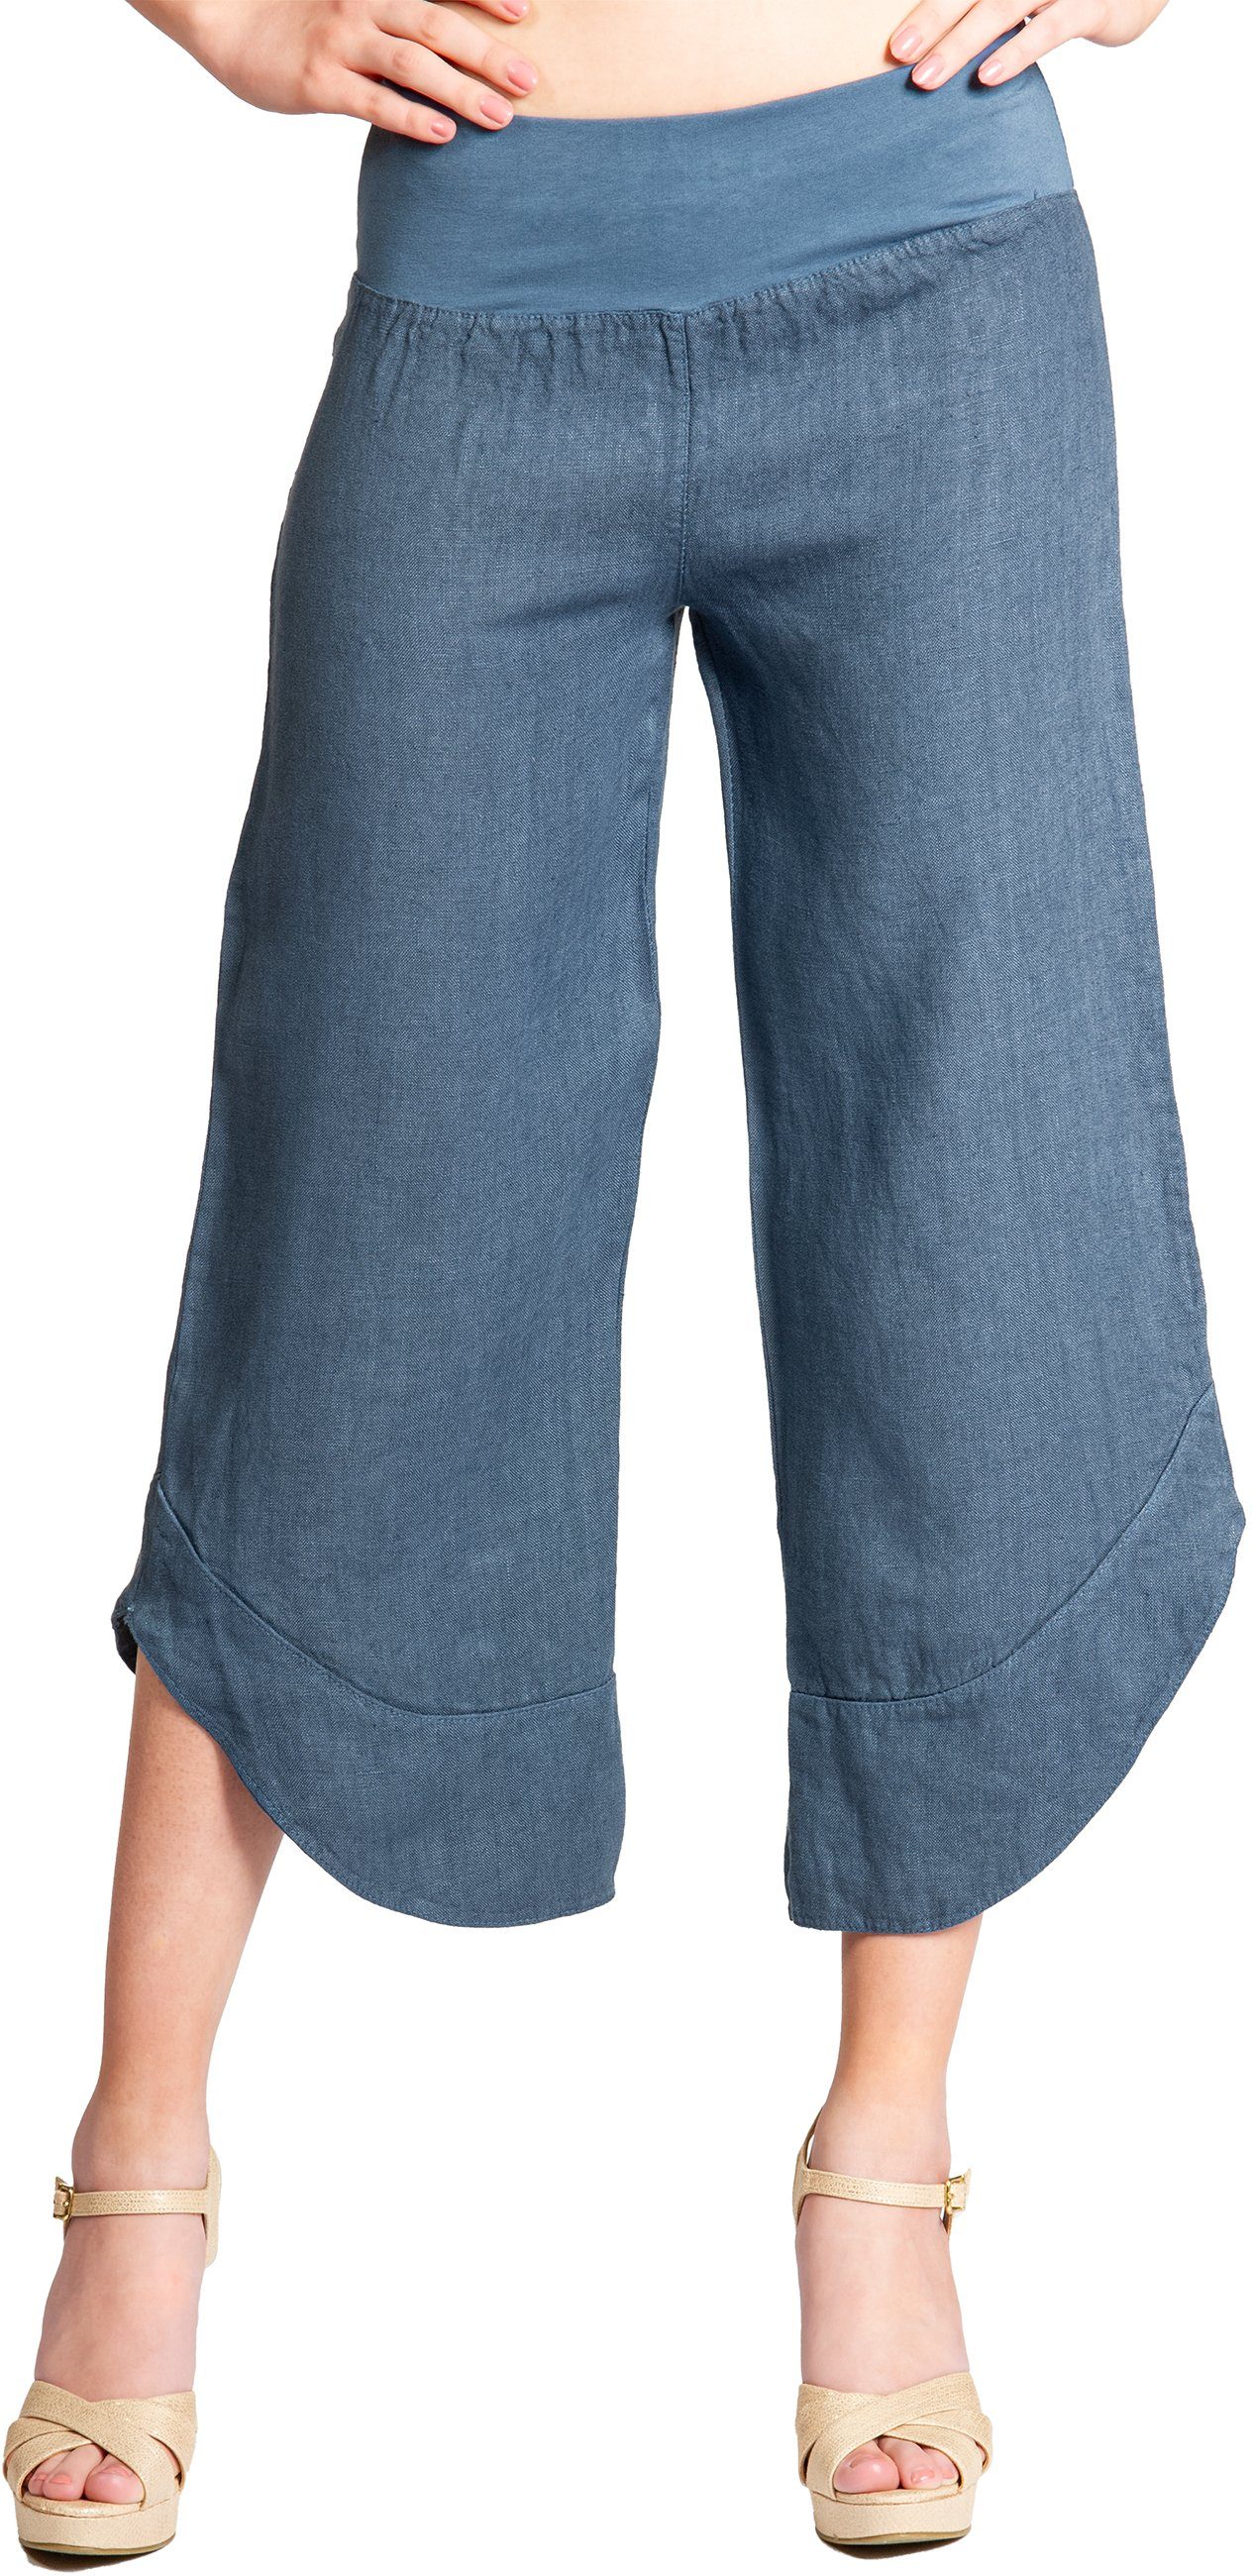 Hose robustem Damen 3/4 KHS052 jeans Caspar Leinen Capri blau Leinenhose aus